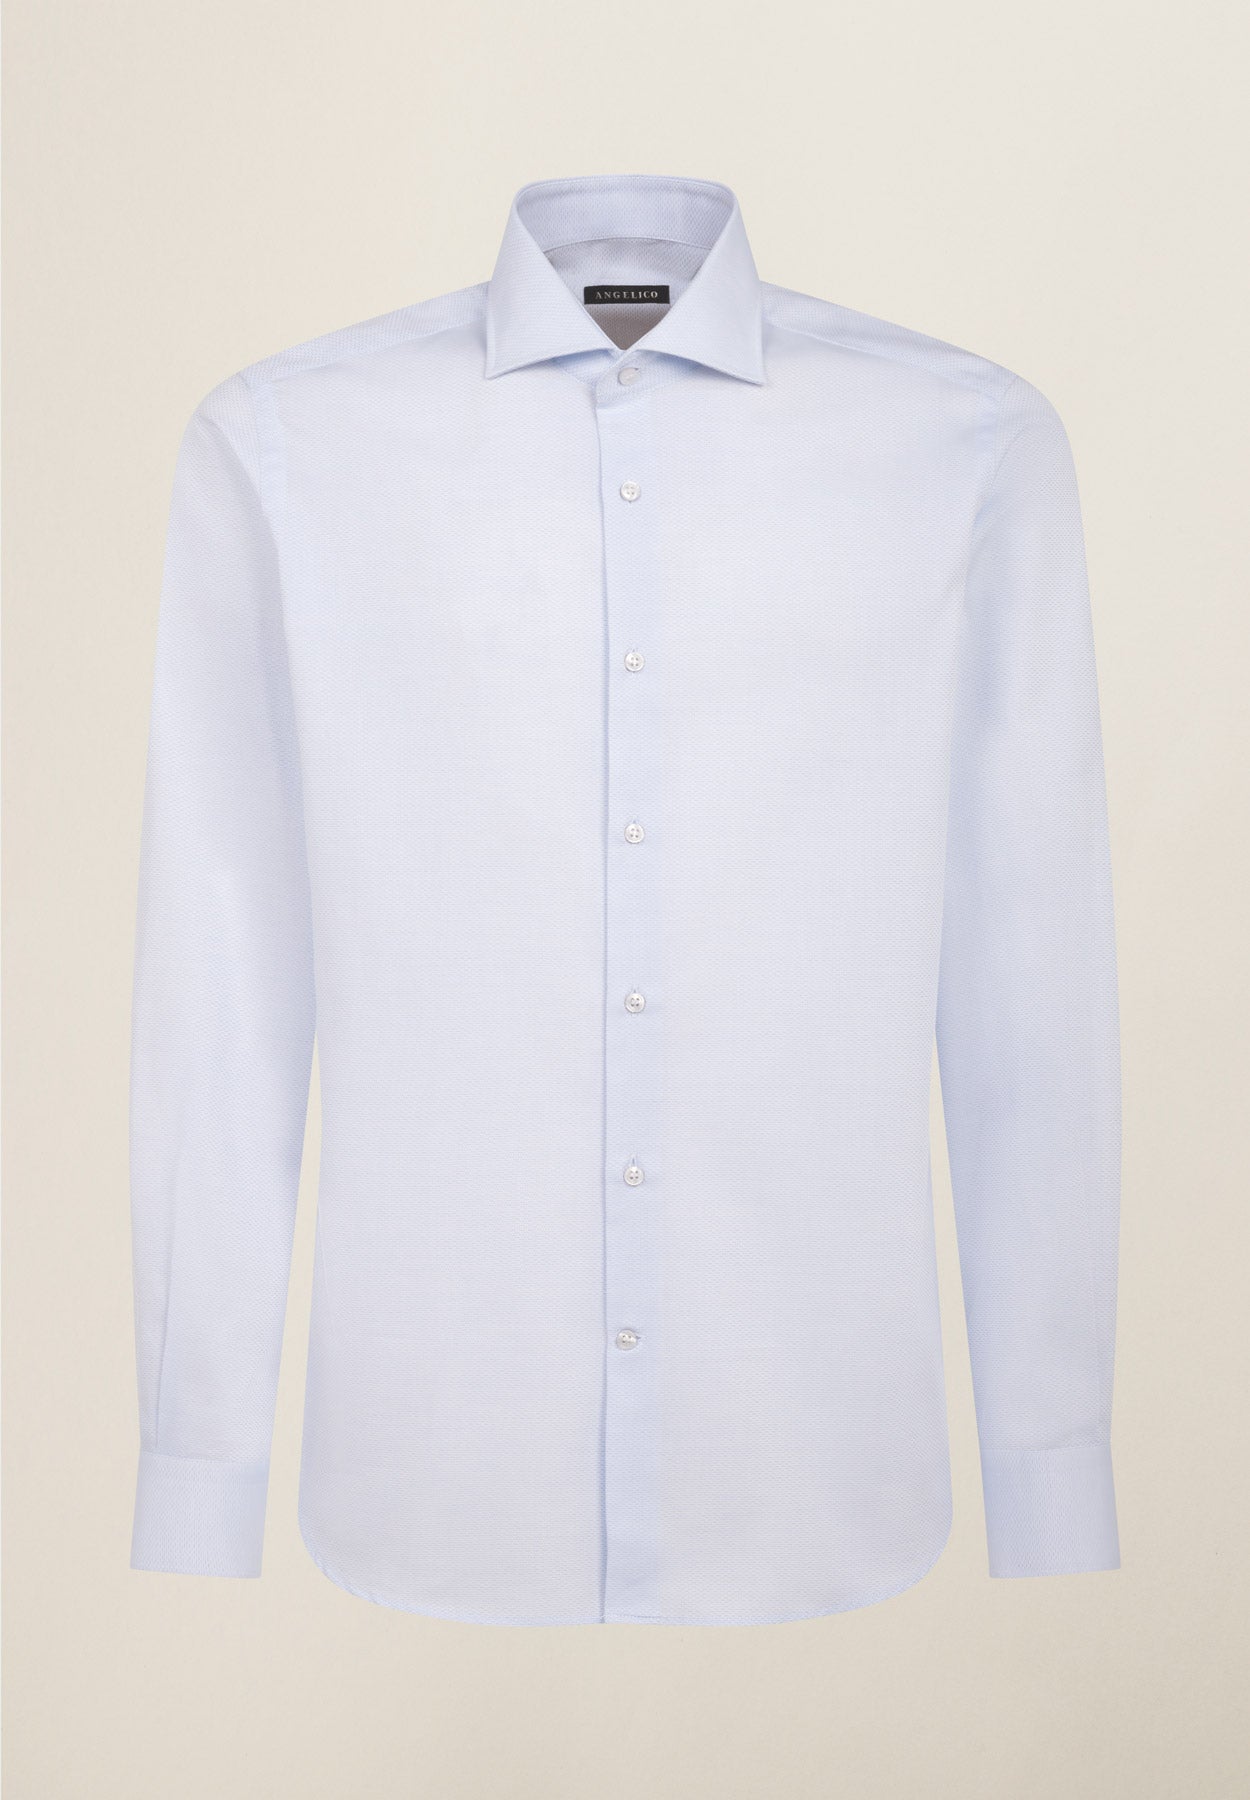 Hellblaues Baumwollhemd mit Mikrodesign in normaler Passform